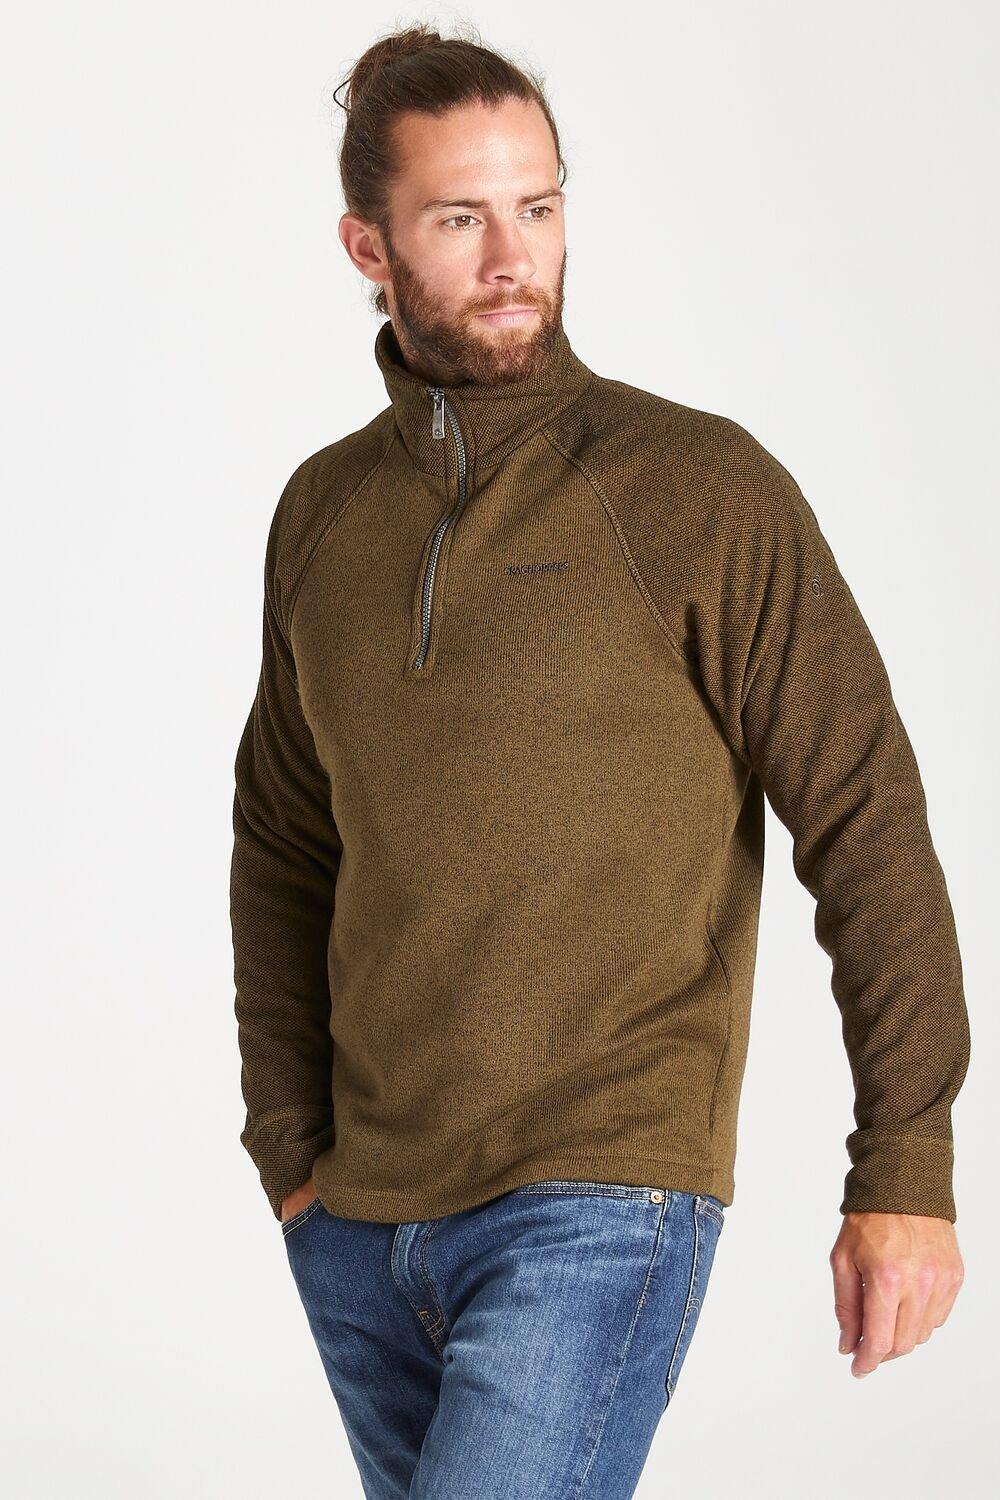 Hoodies & Sweatshirts | Half-Zip 'Barker' Knitlook Fleece | Craghoppers